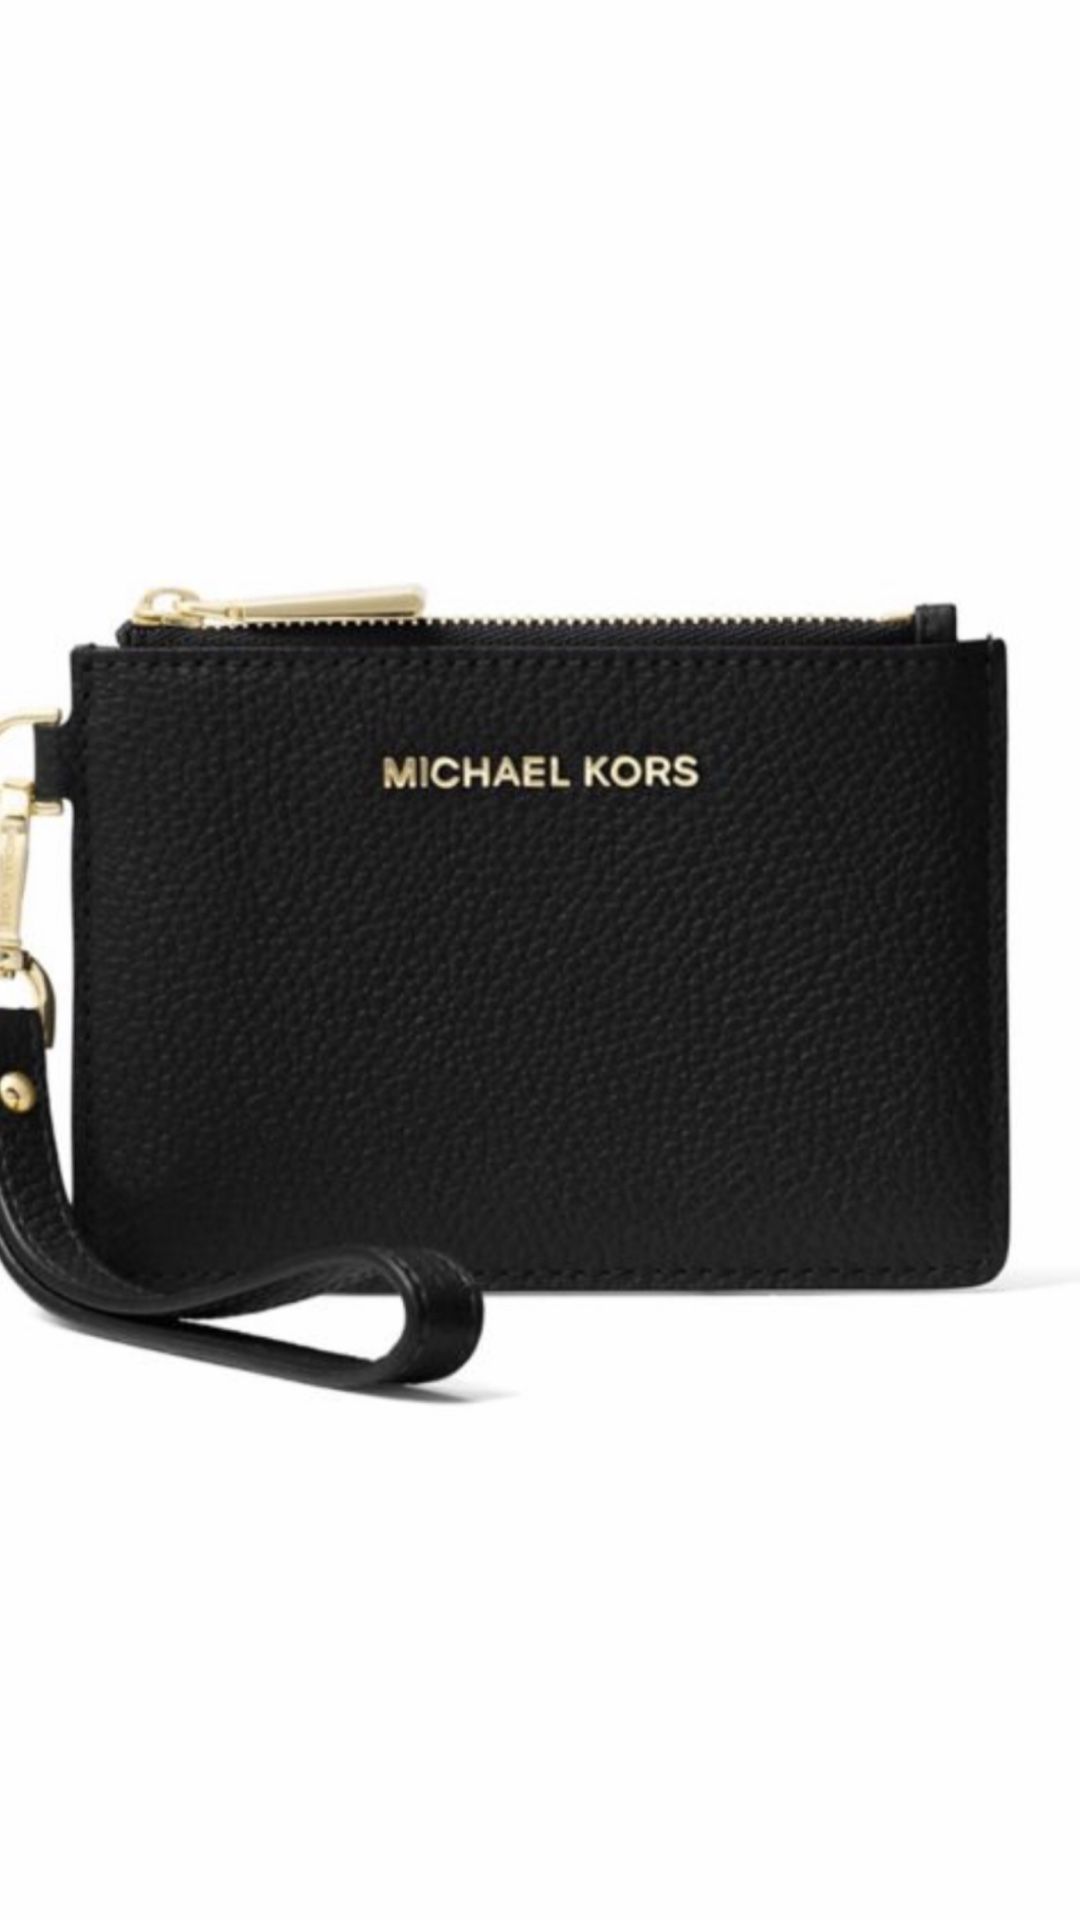 Michael kors black leather coins purse.